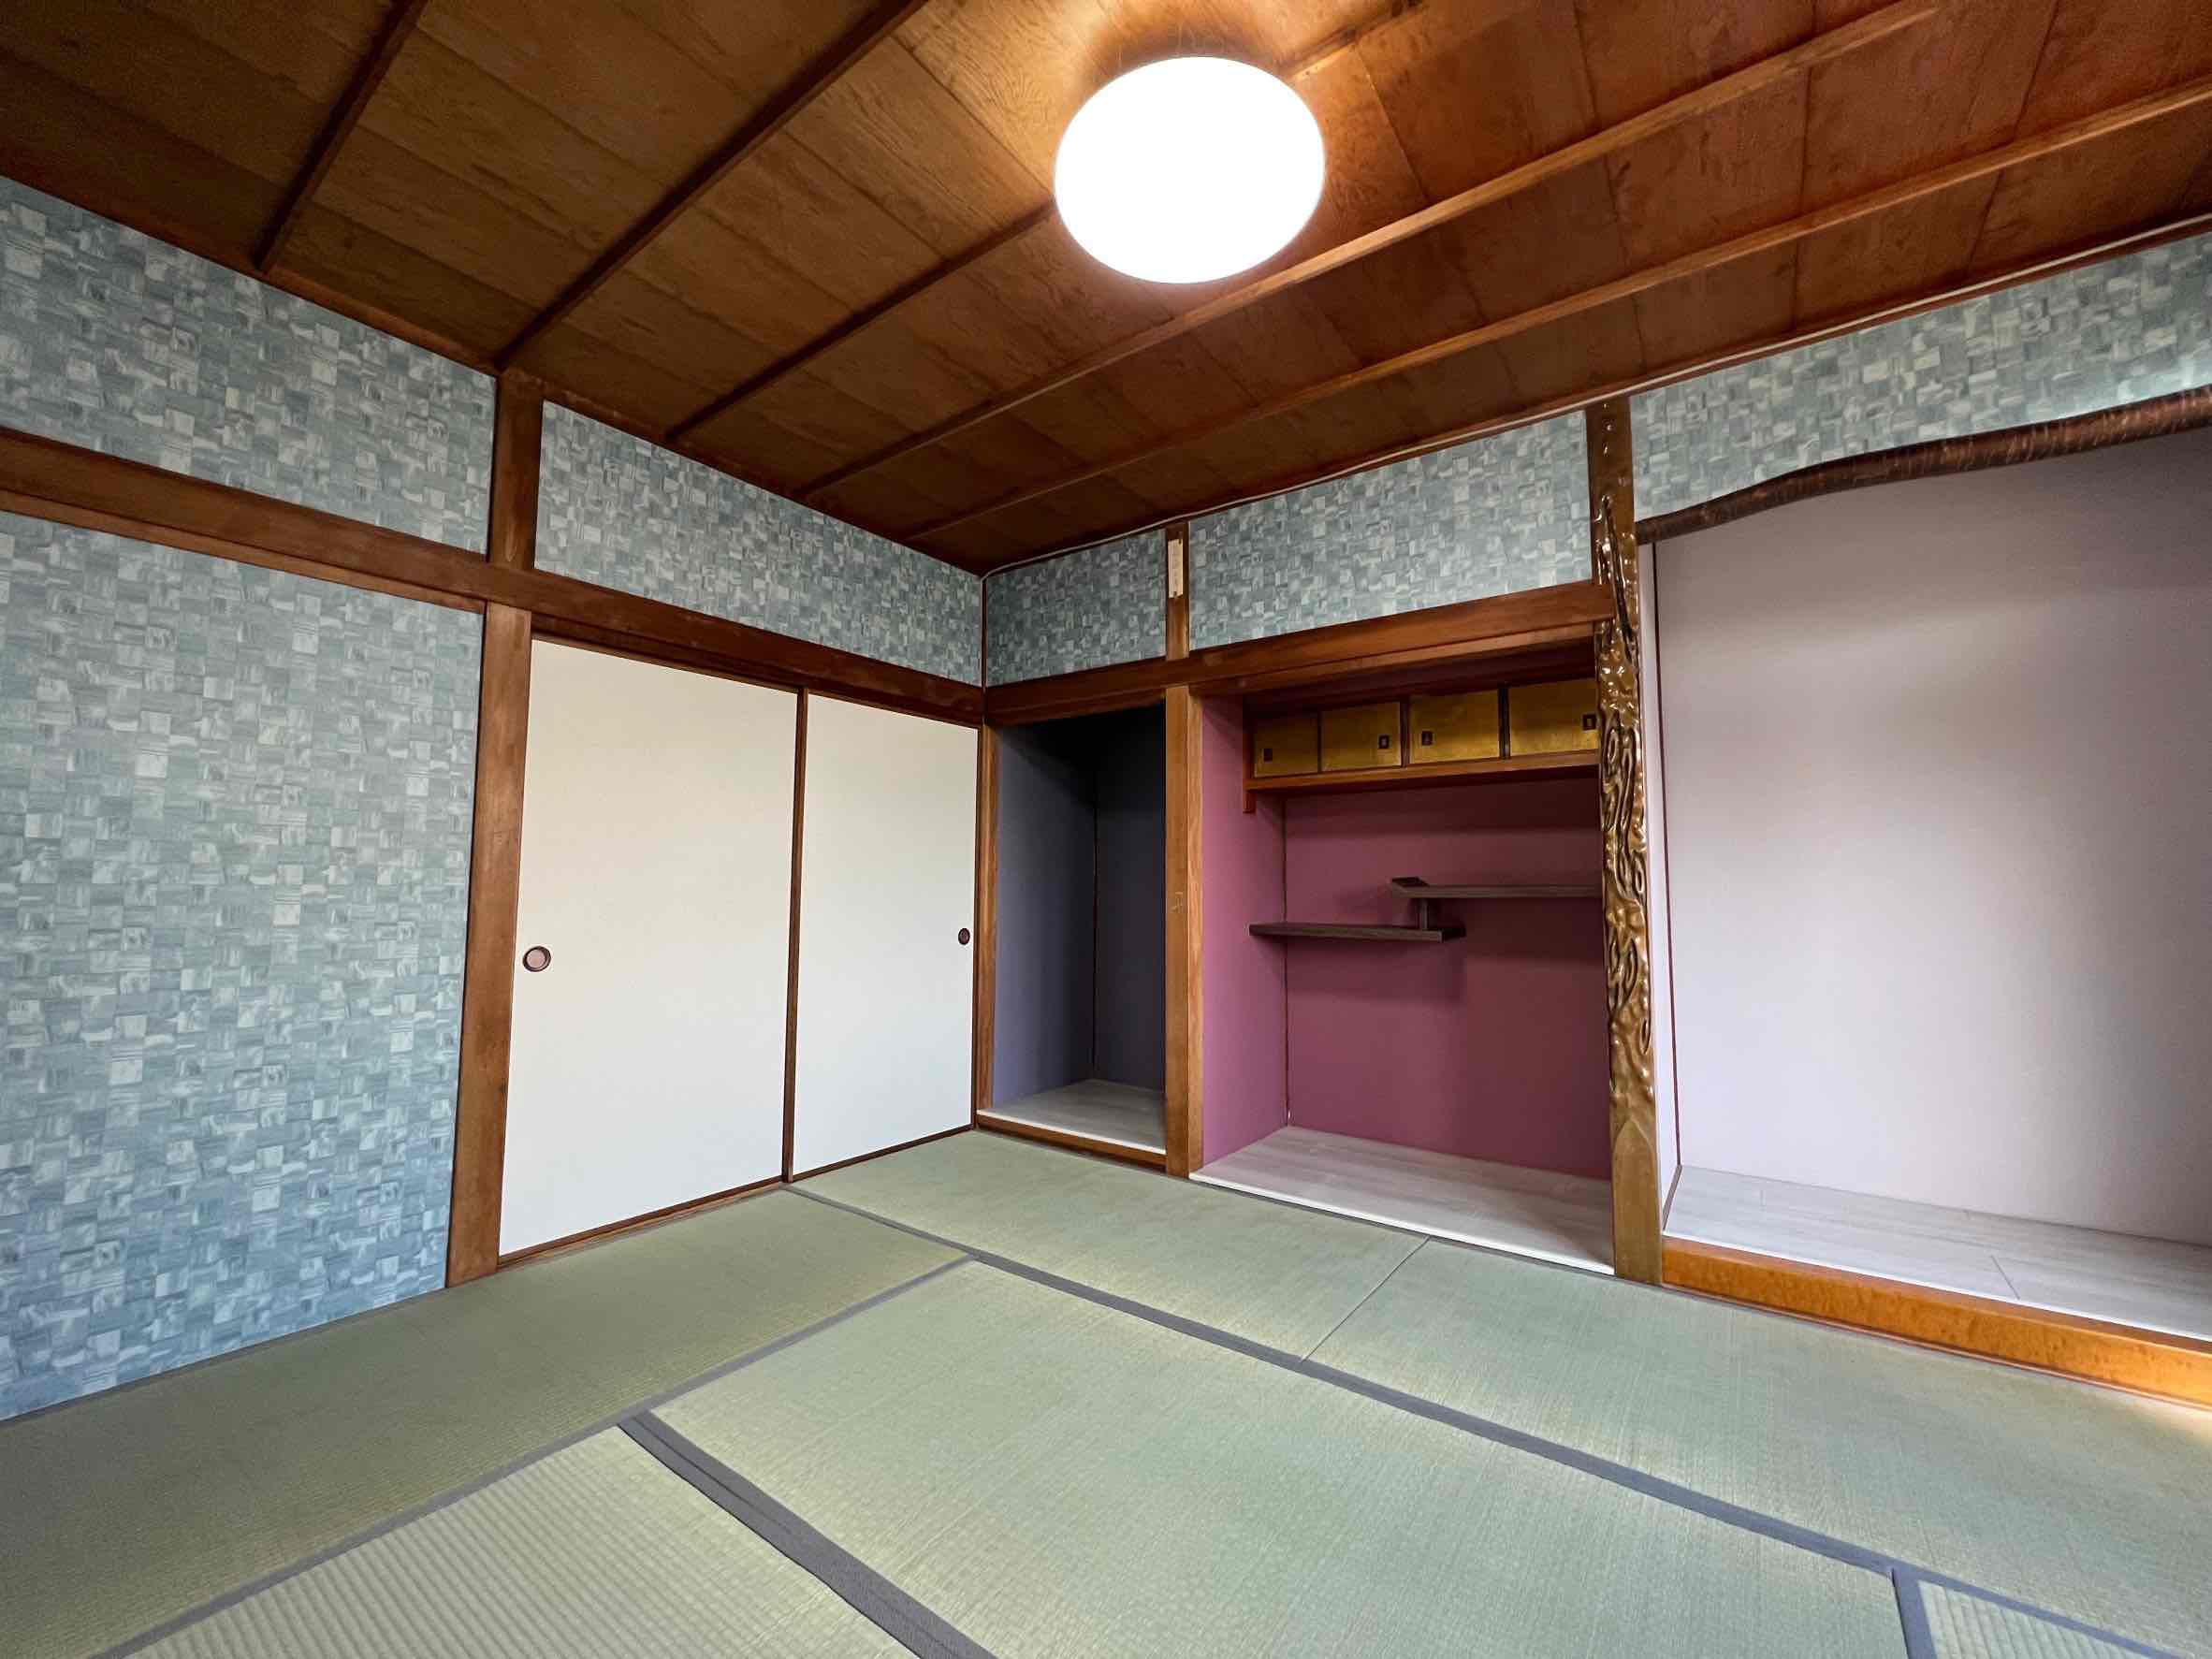 茨木市 壁紙でモダンな印象に変わる 和室リフォーム 茨木でリフォーム 新築を得意とする 有 山川工務店一級建築事務所